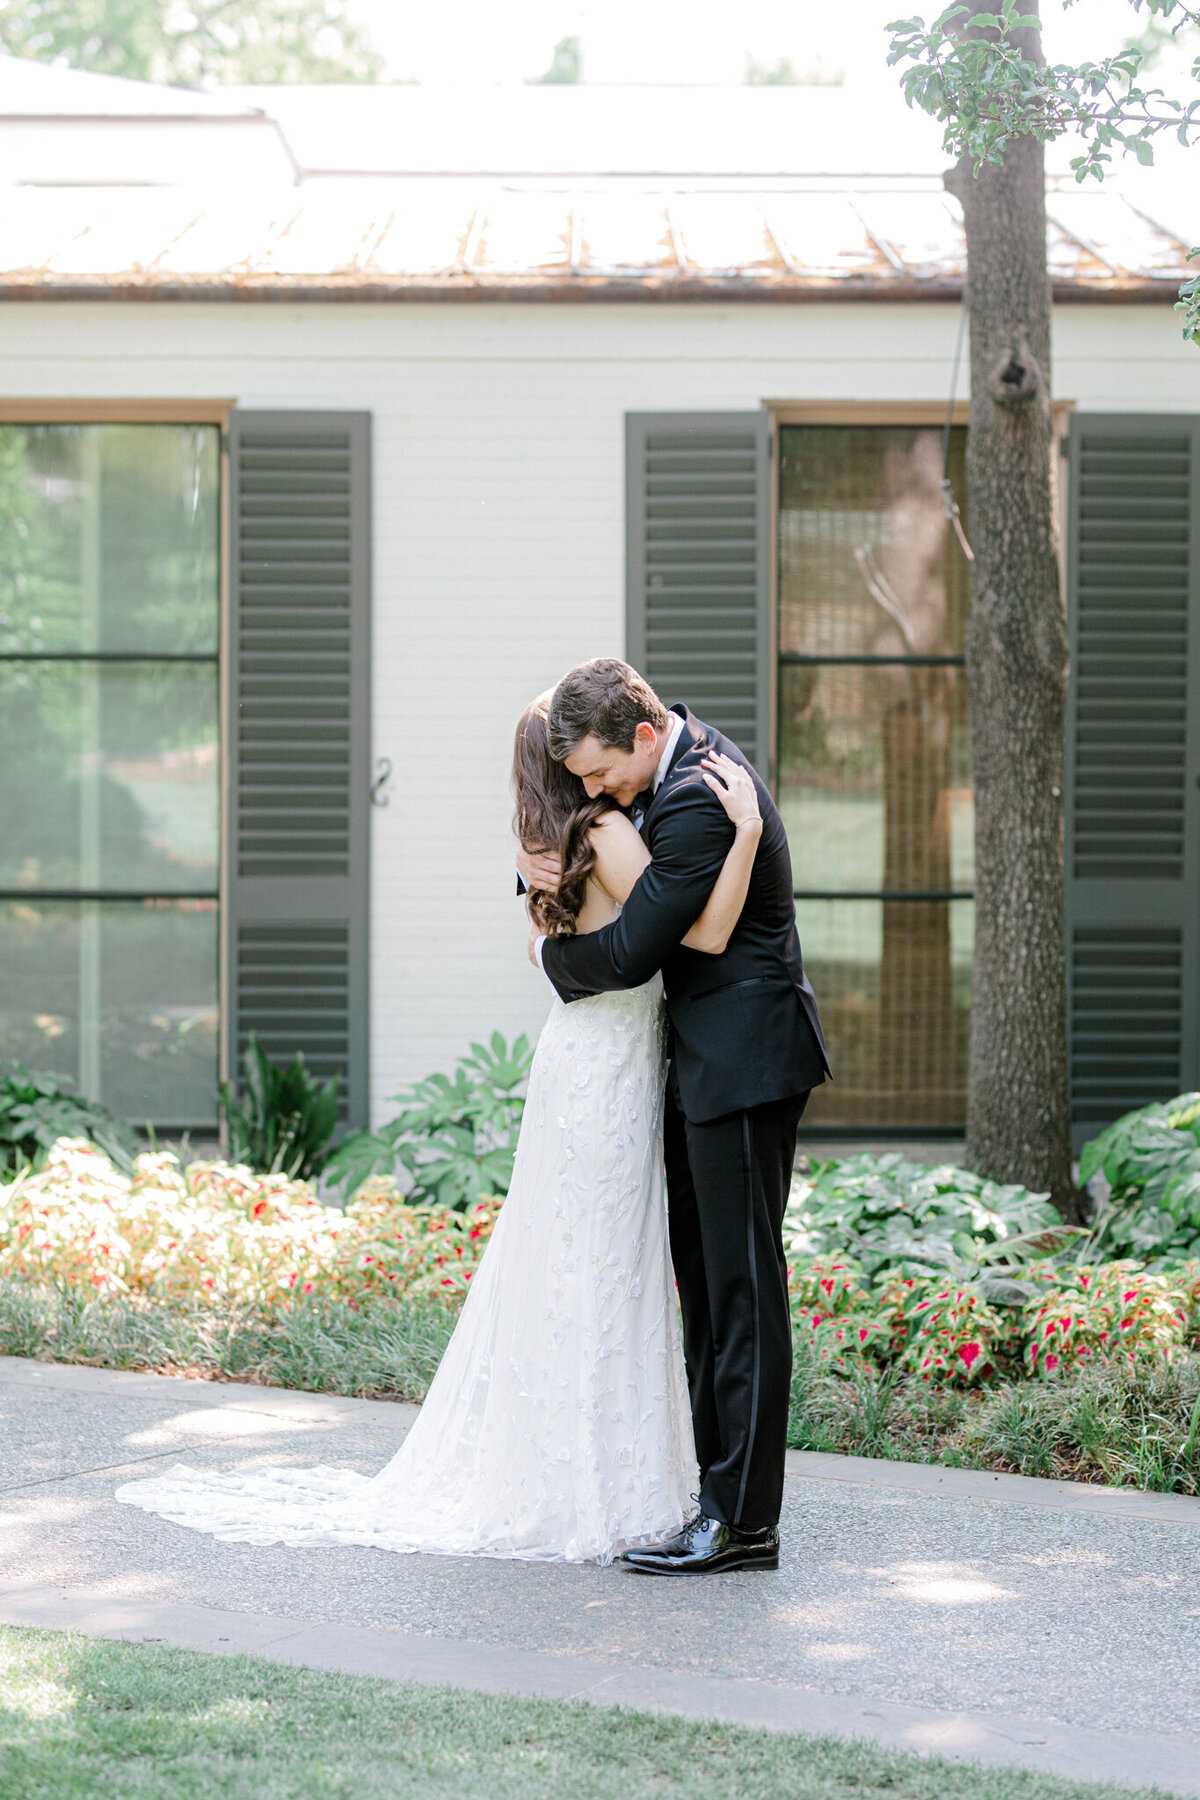 Gena & Matt's Wedding at the Dallas Arboretum | Dallas Wedding Photographer | Sami Kathryn Photography-67